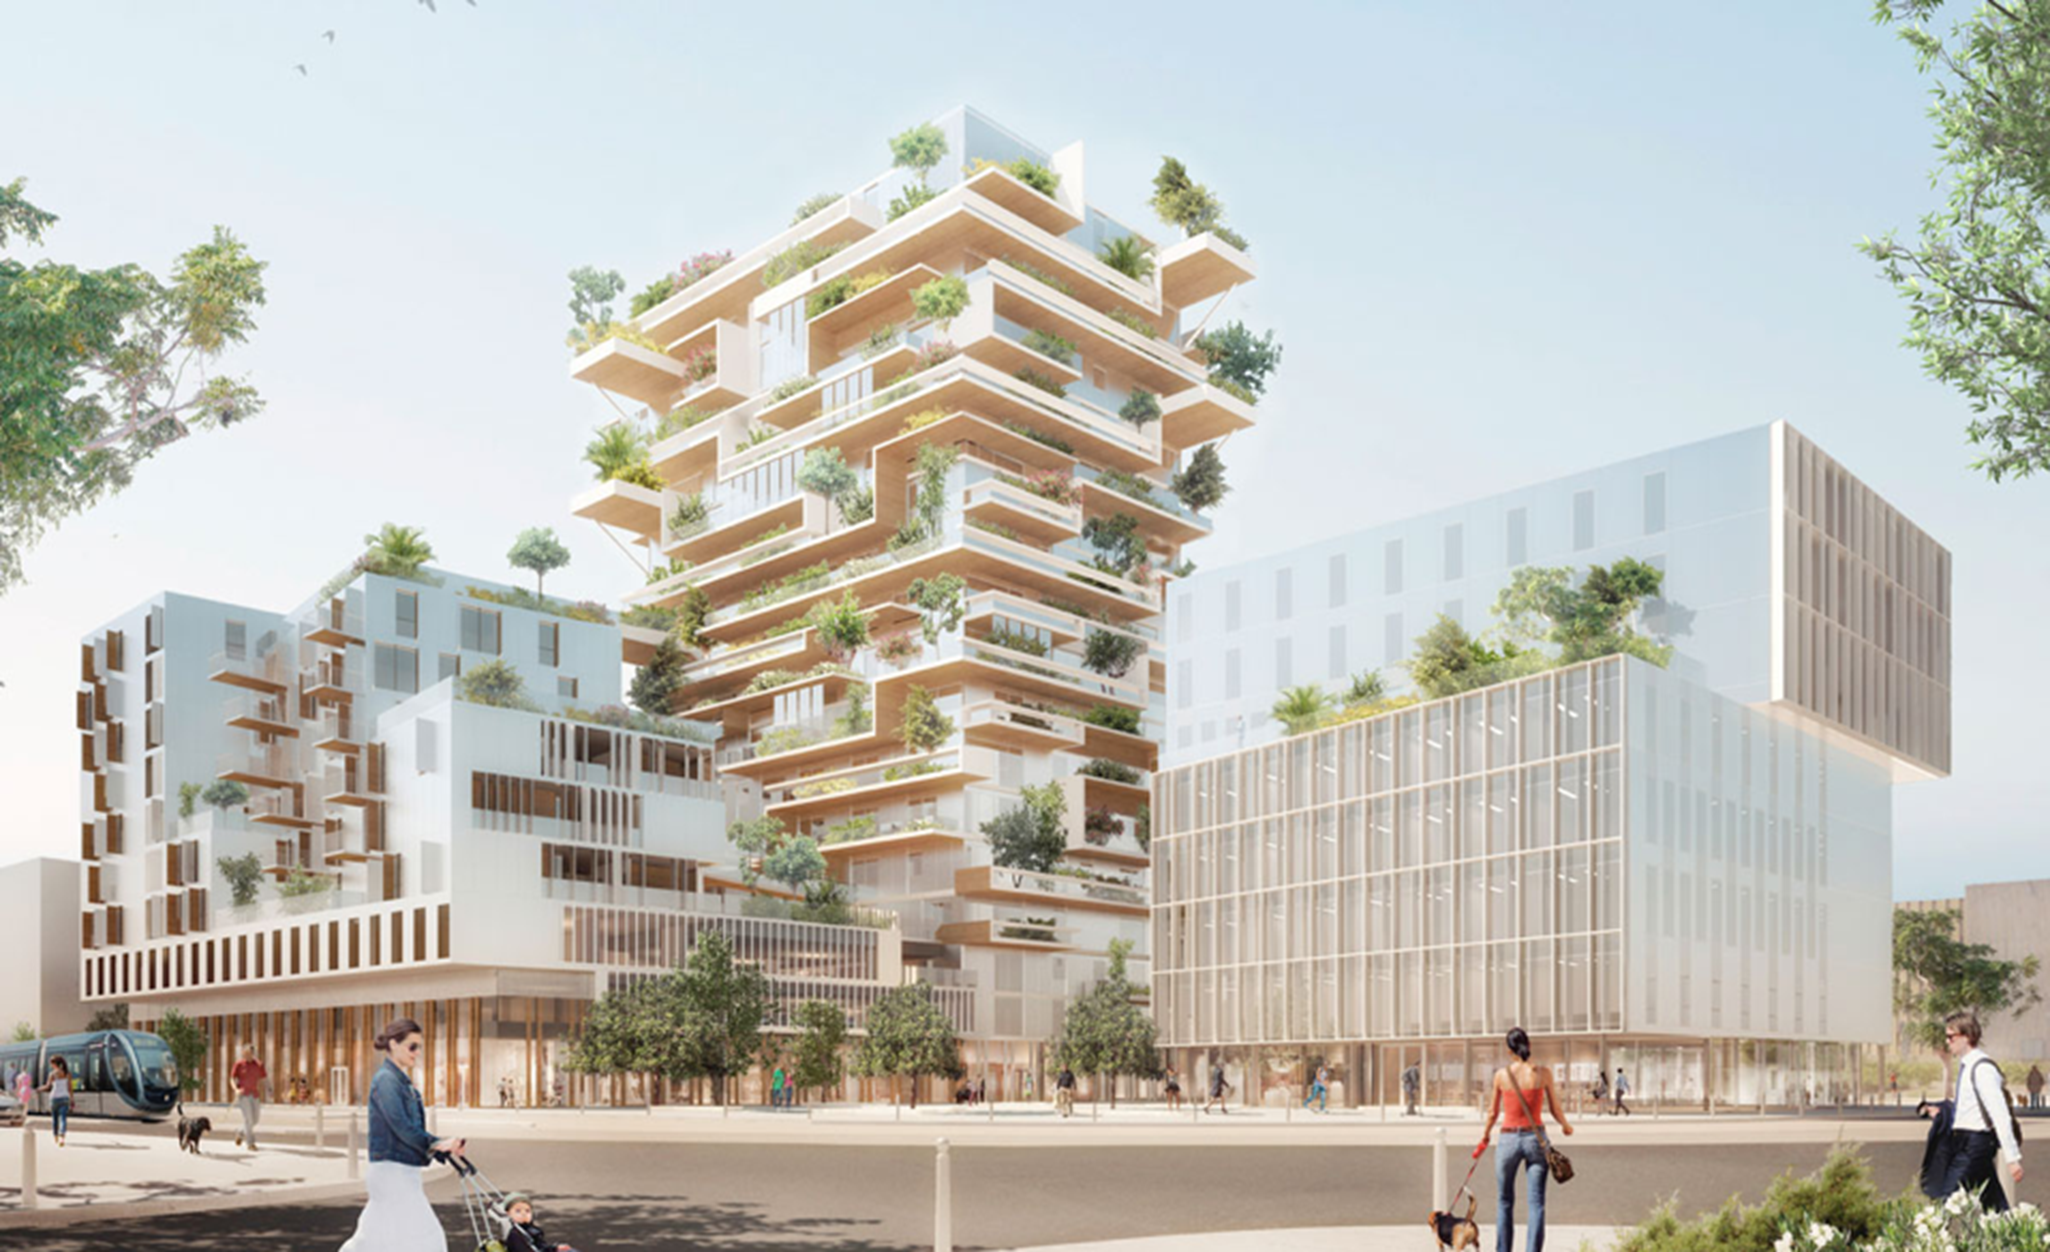 Ranskan ensimmäinen puinen asuintornitalo näyttää suuntaa ilmastokestäville kaupungeille